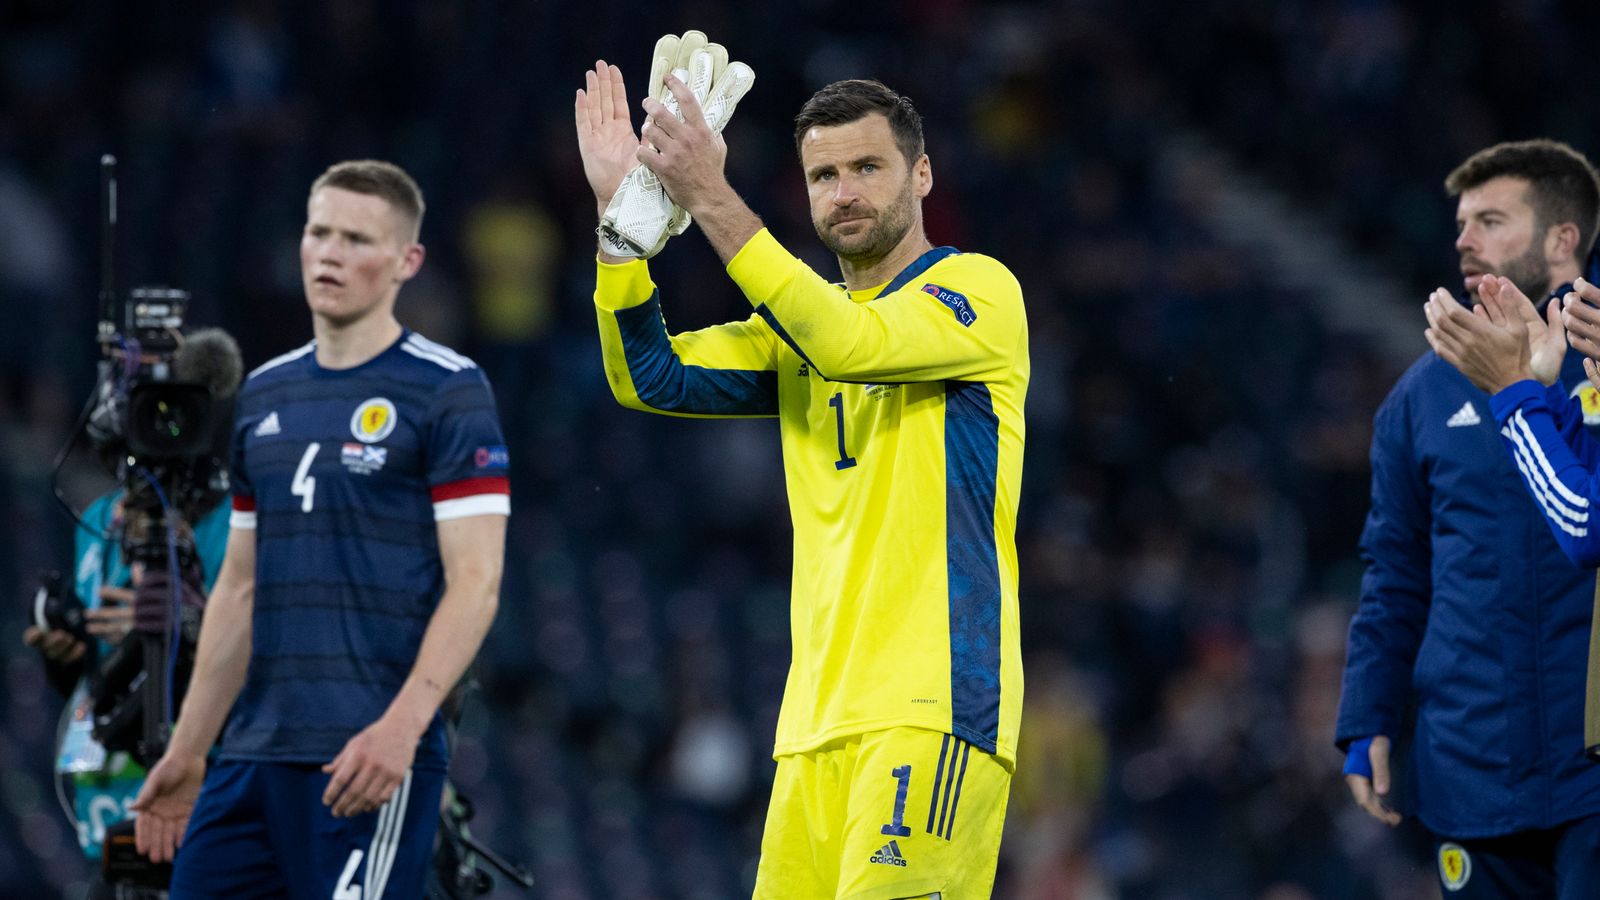 David Marshall: Škótsky brankár končí v medzinárodnom futbale |  futbalové správy